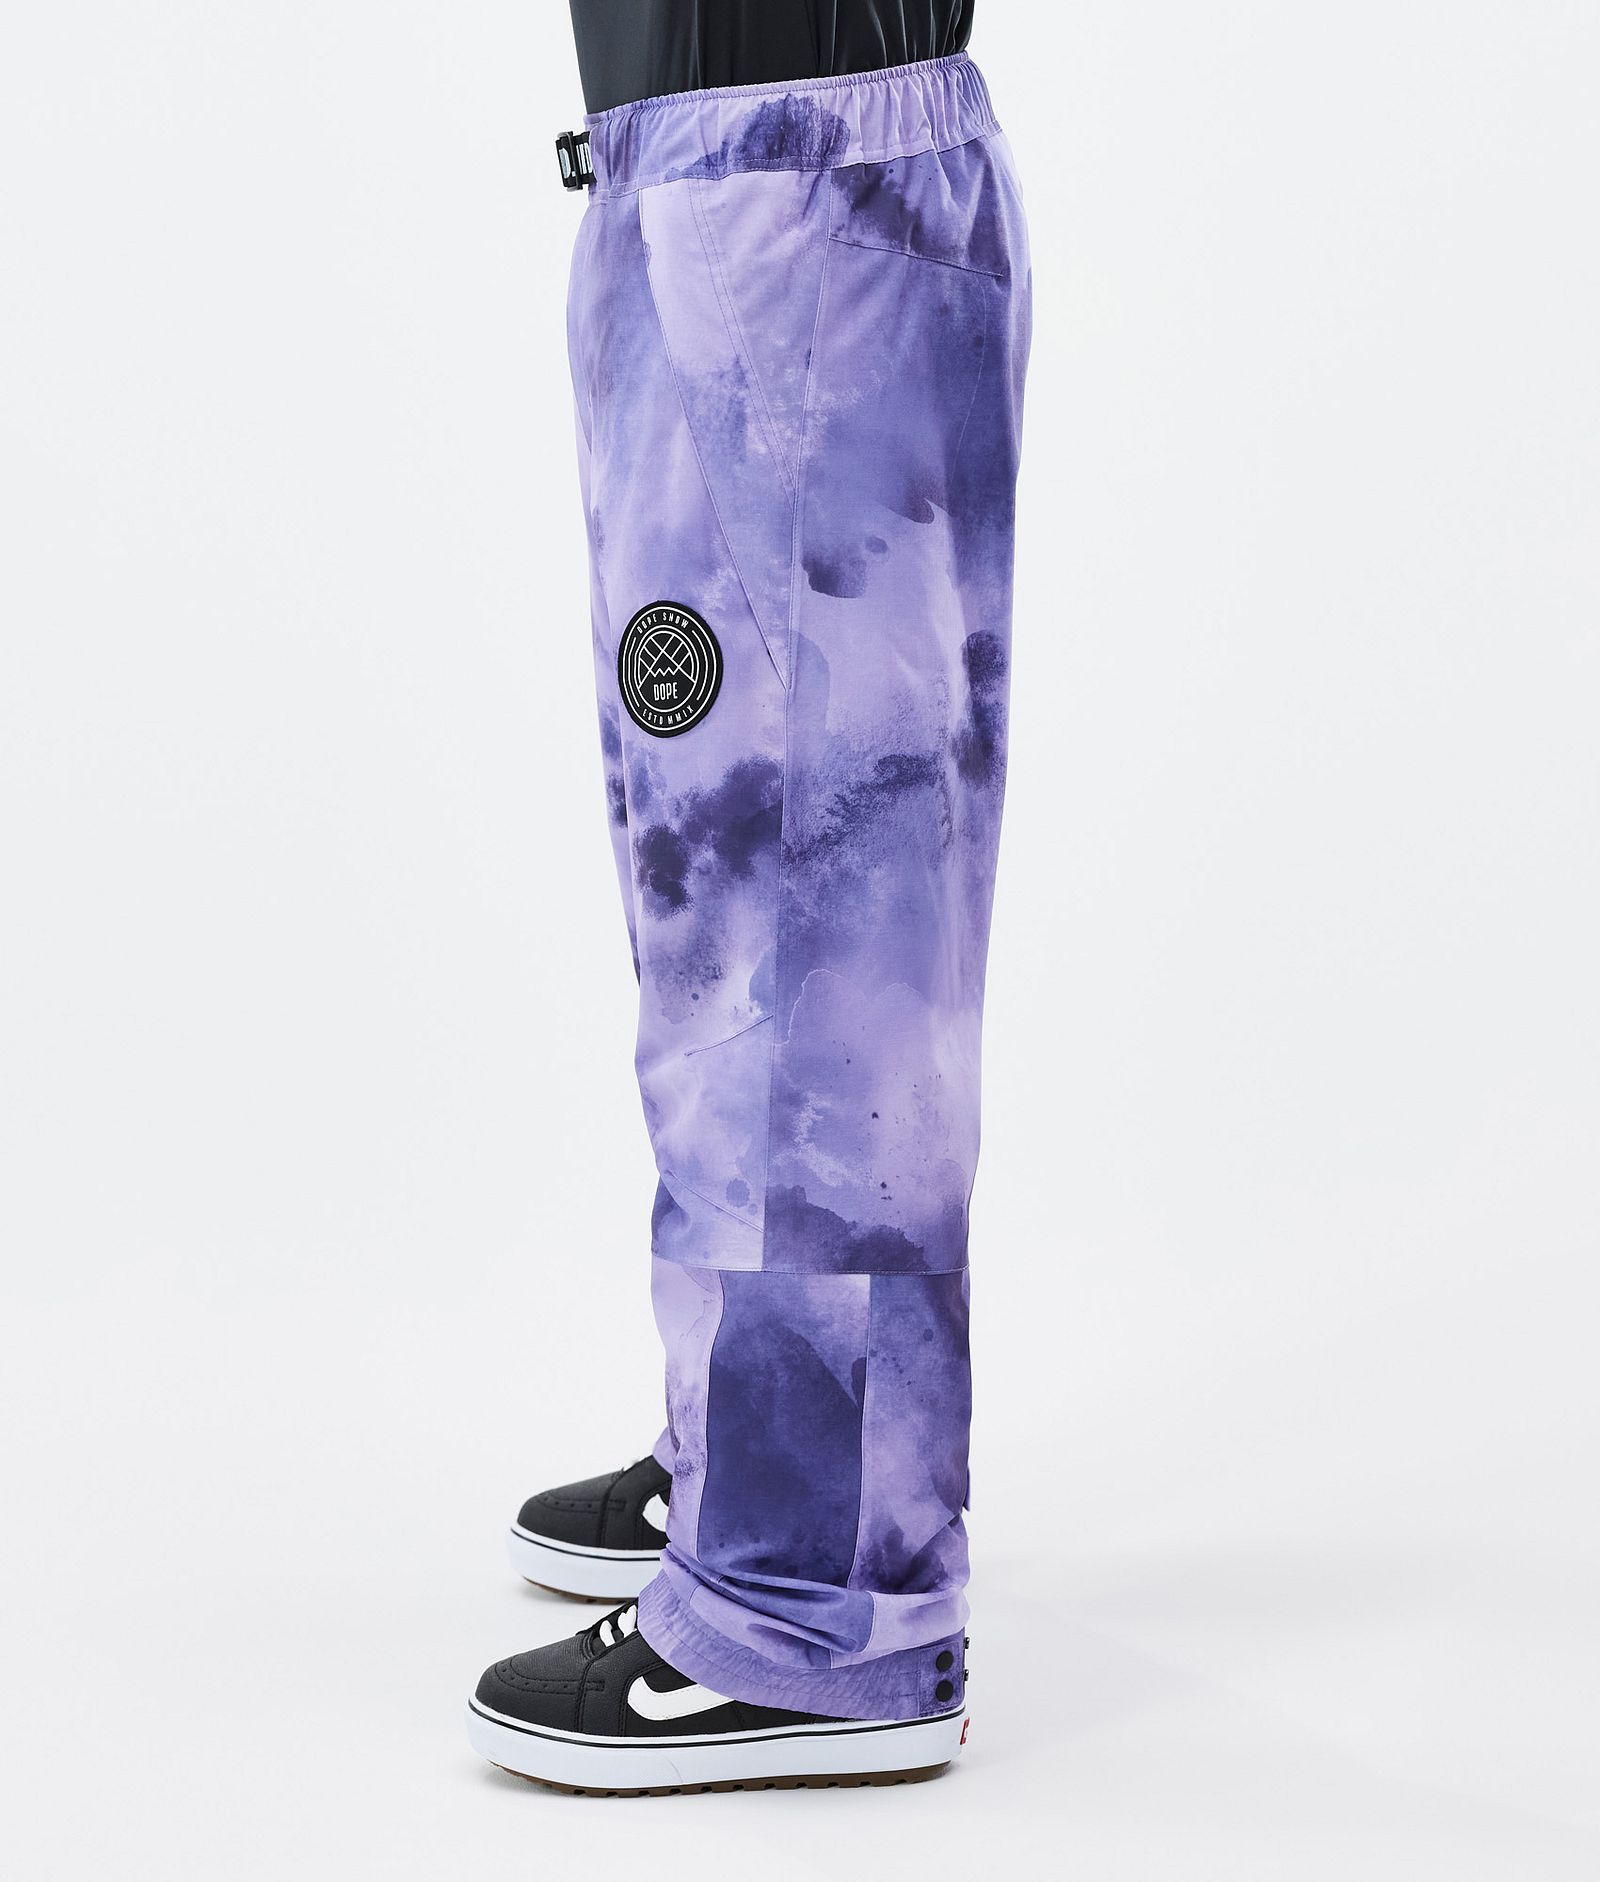 Blizzard Pantalones Snowboard Hombre Liquid Violet